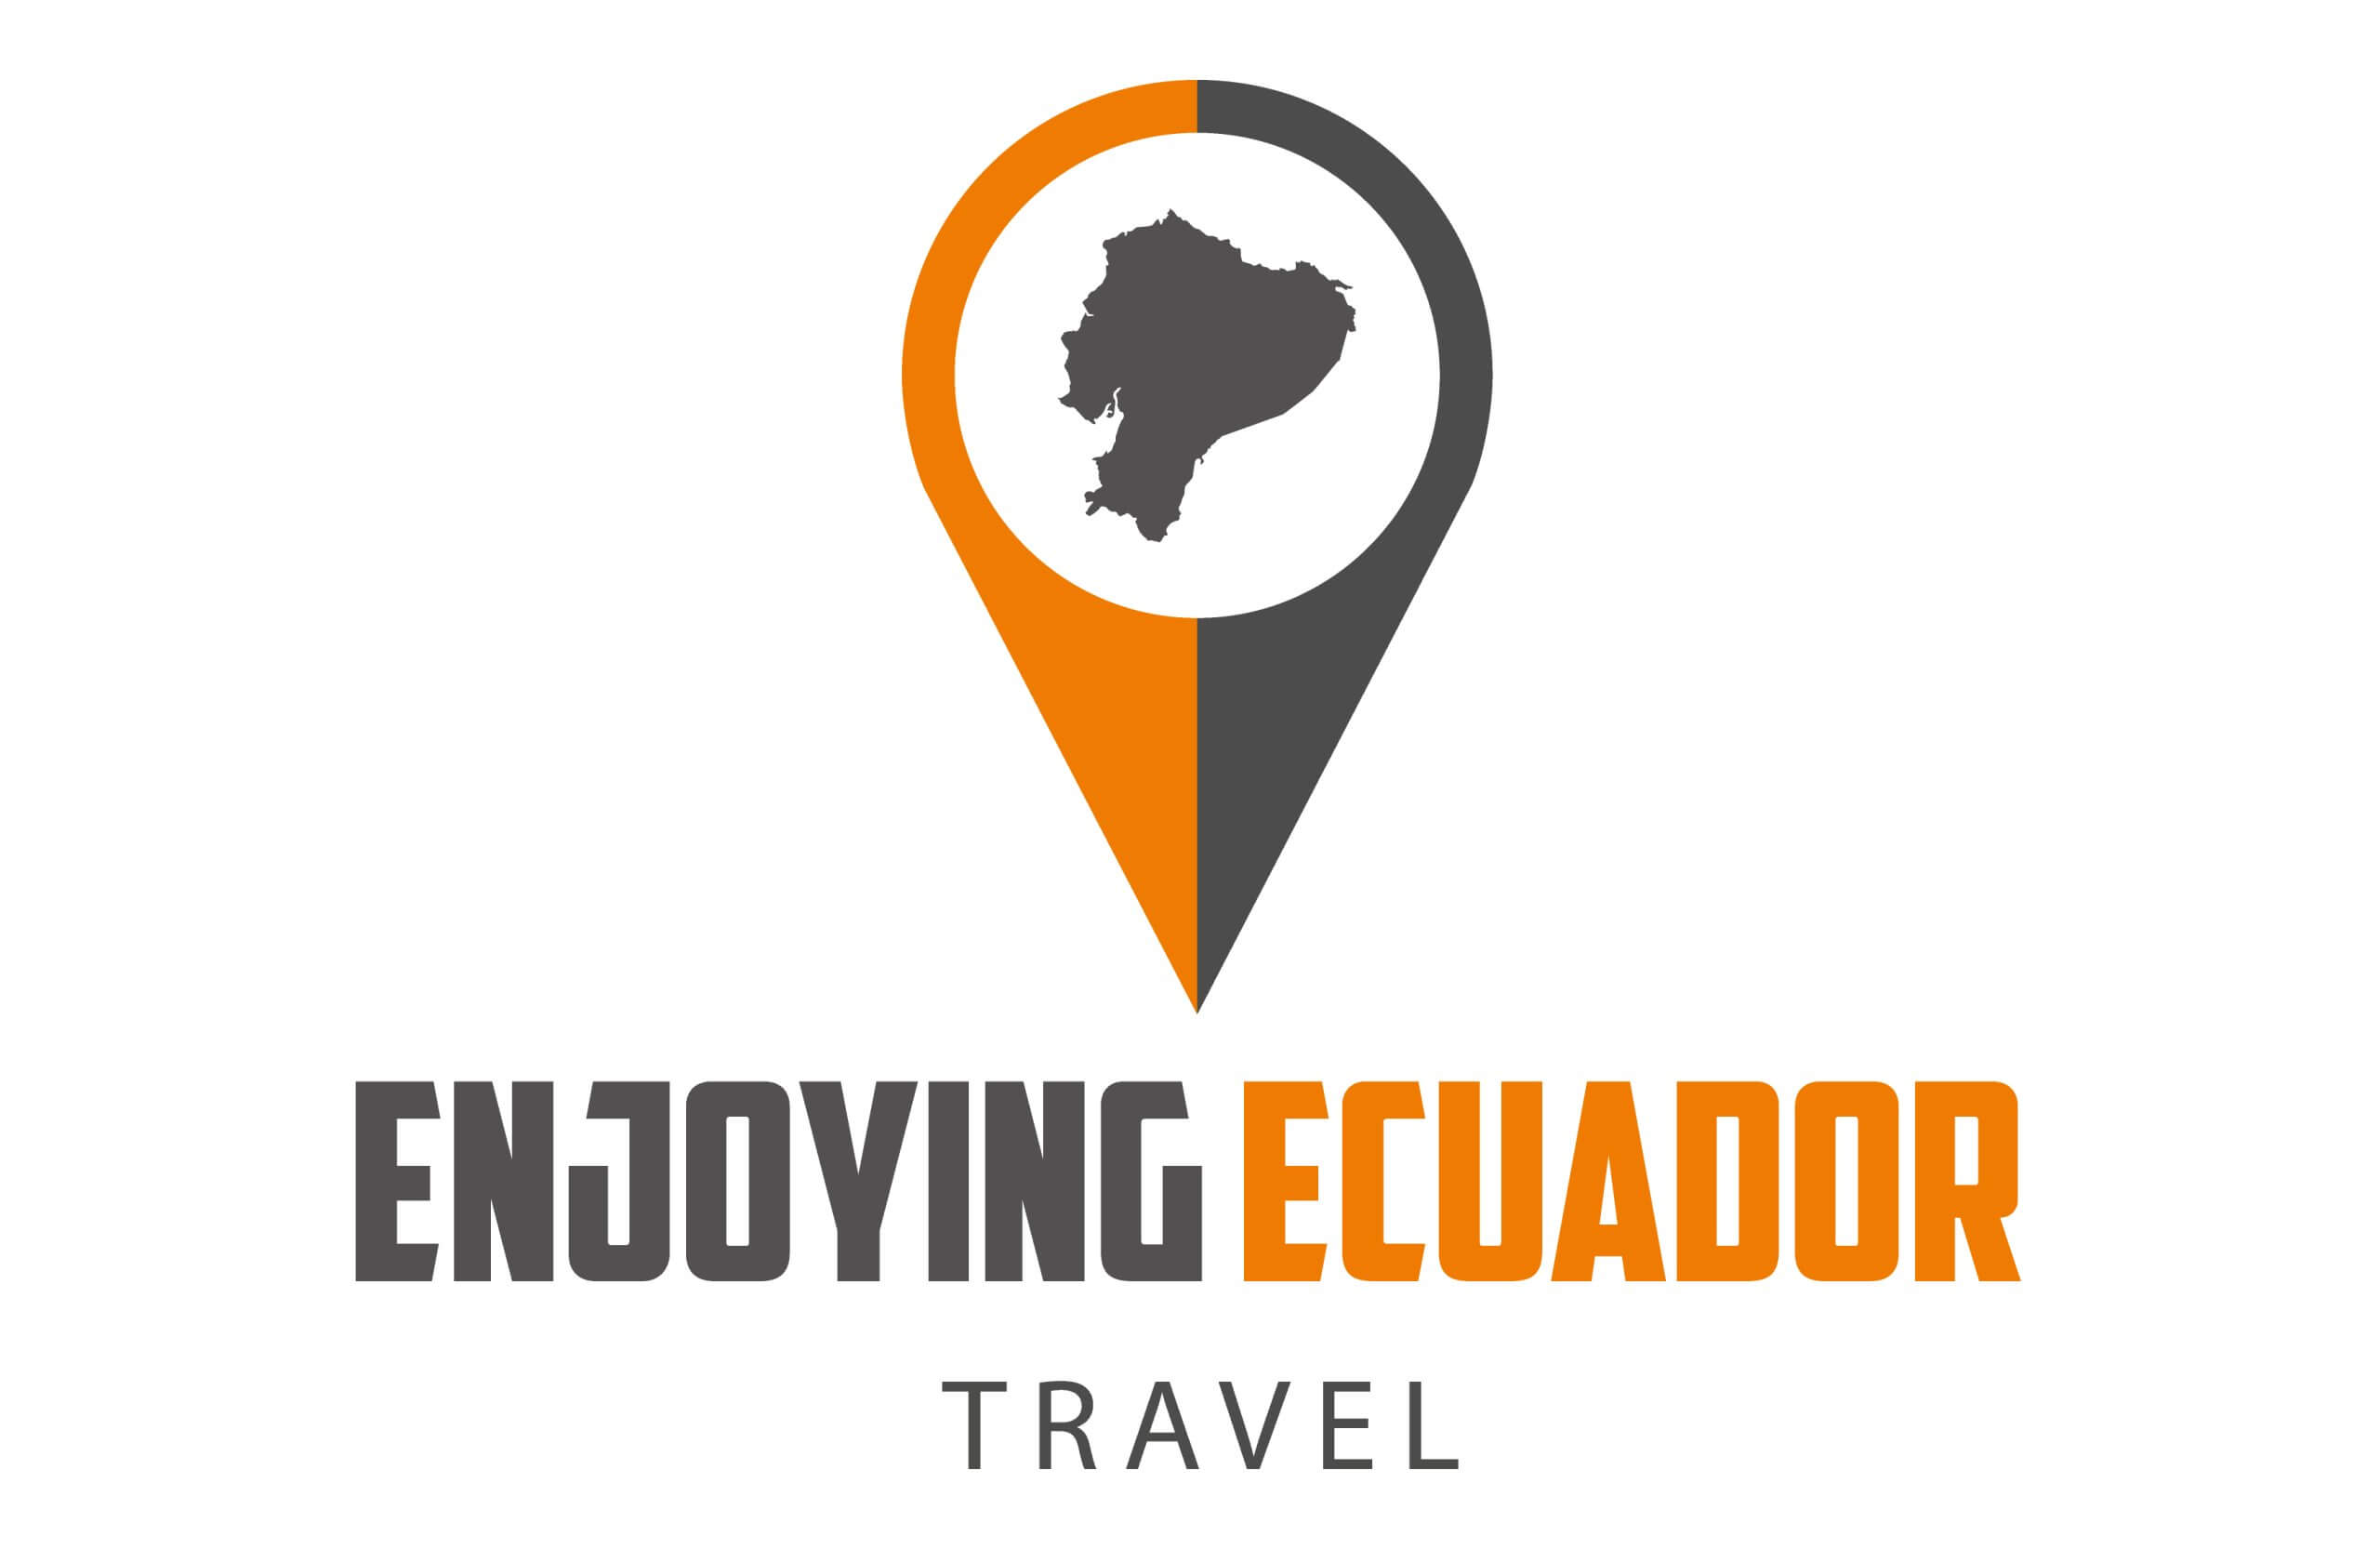 Winner Image - Enjoying Ecuador Travel